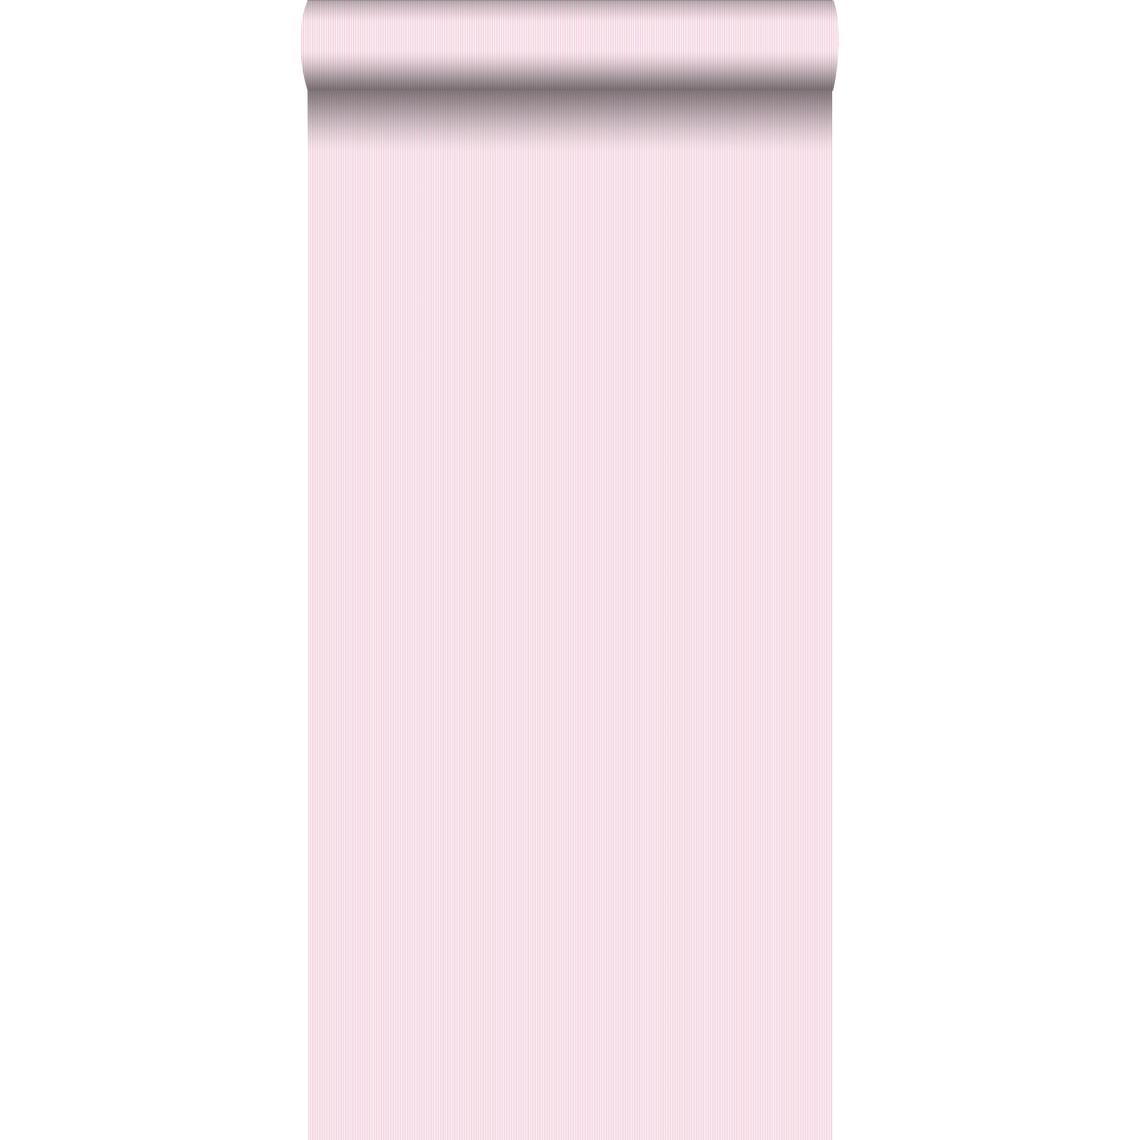 ESTAhome - ESTAhome papier peint rayures fines rose - 137016 - 53 cm x 10,05 m - Papier peint